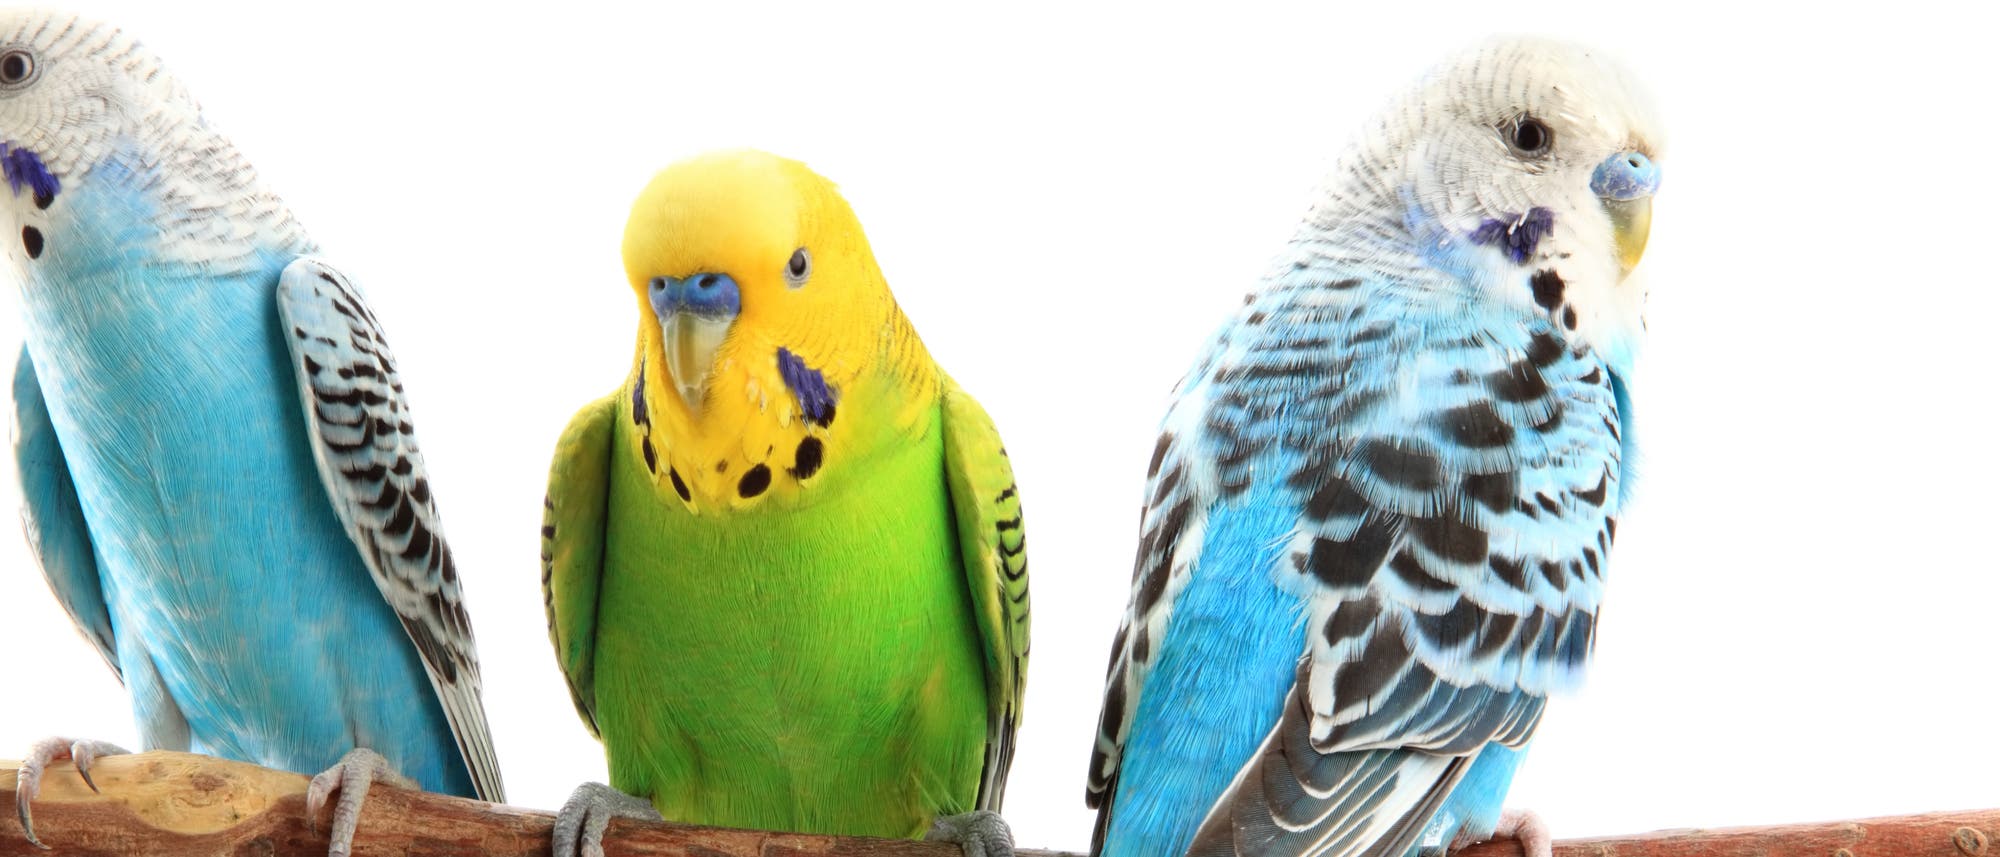 Grünes Federkleid und gelber Kopf – so präsentiert sich die Wildform der in Australien heimischen Wellensittiche (Melopsittacus undulatus). Erst als Vogelhalter anfingen, gezielt neue Farbvarianten zu züchten, entstand vor etwa 130 Jahren die heute im Zoohandel angebotene blau-weiße Form.